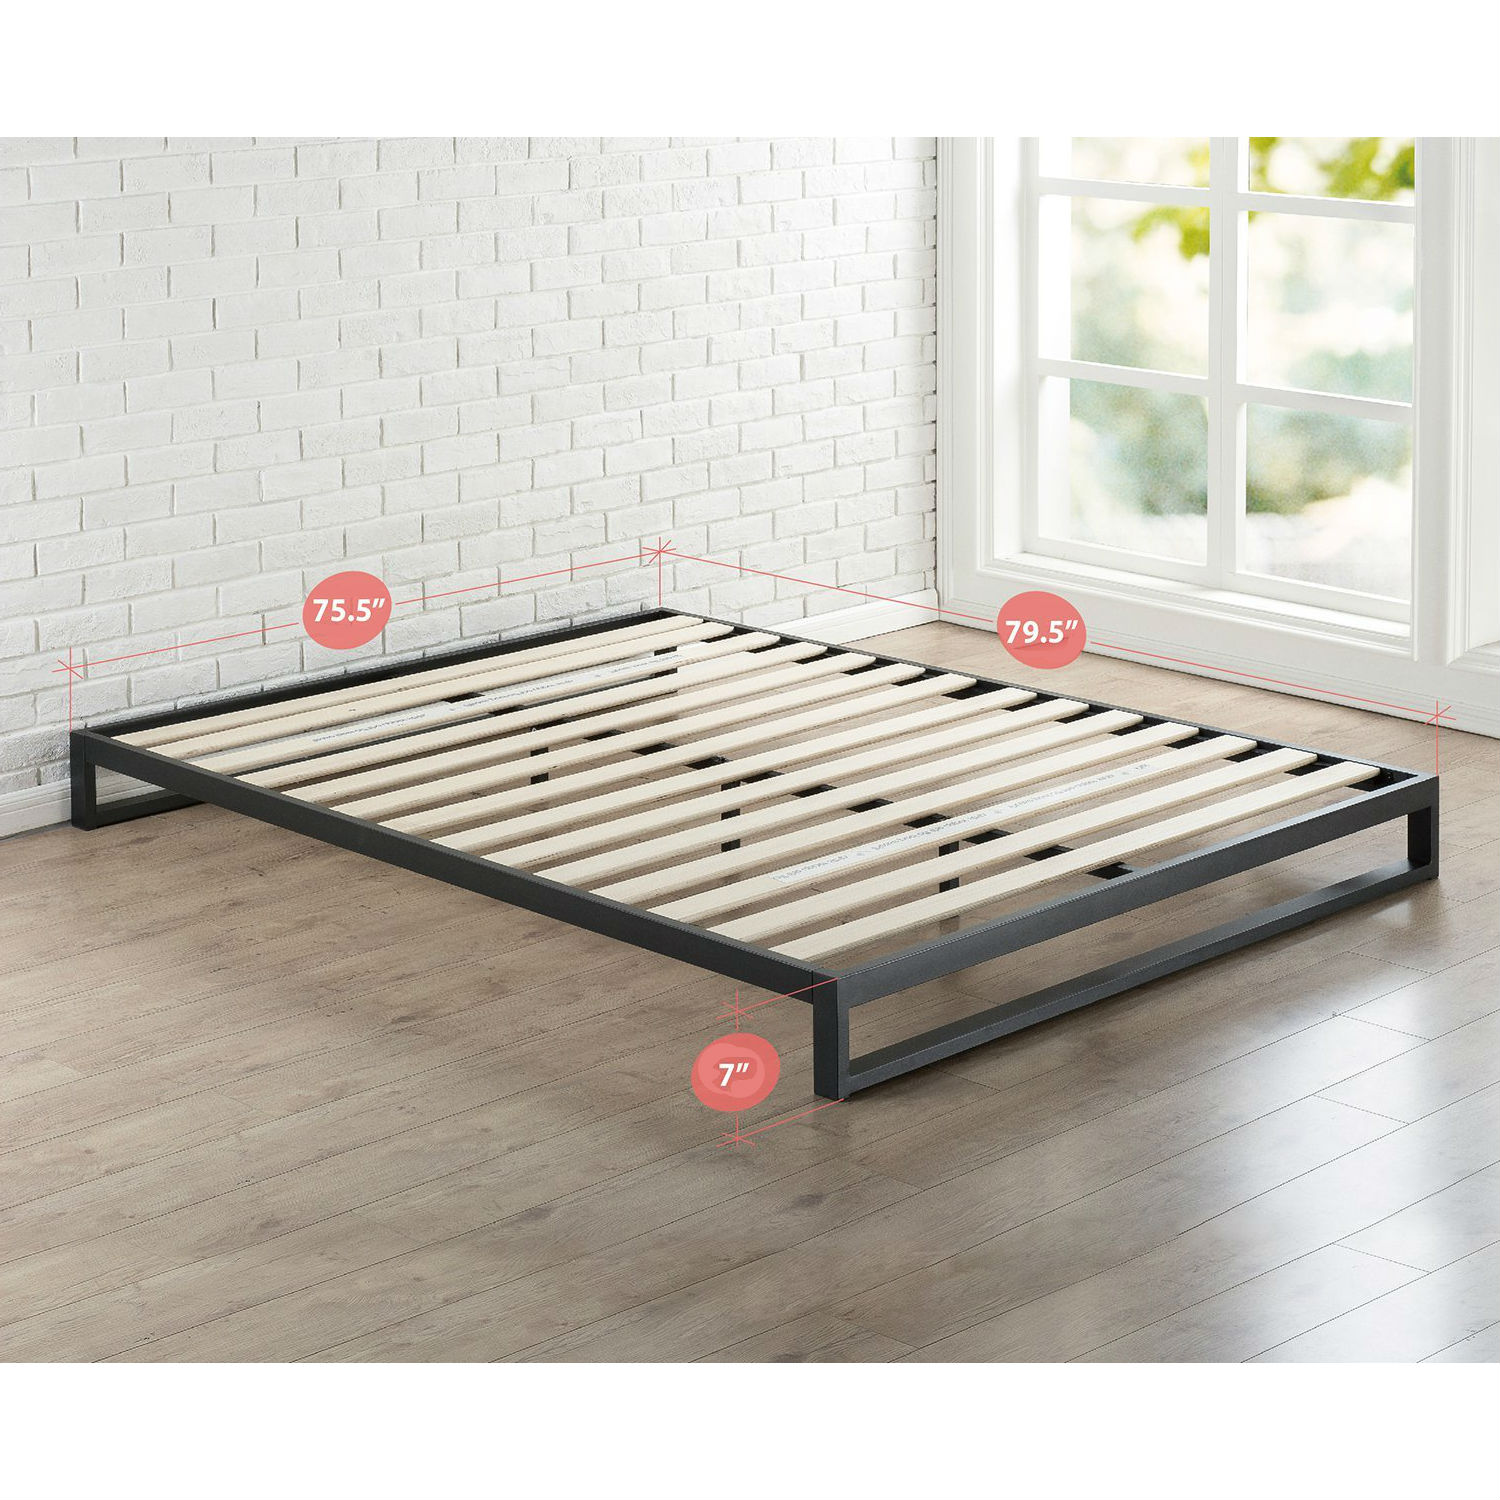 Low Profile Metal Platform Bed Frame, Low Profile Wood Bed Frame